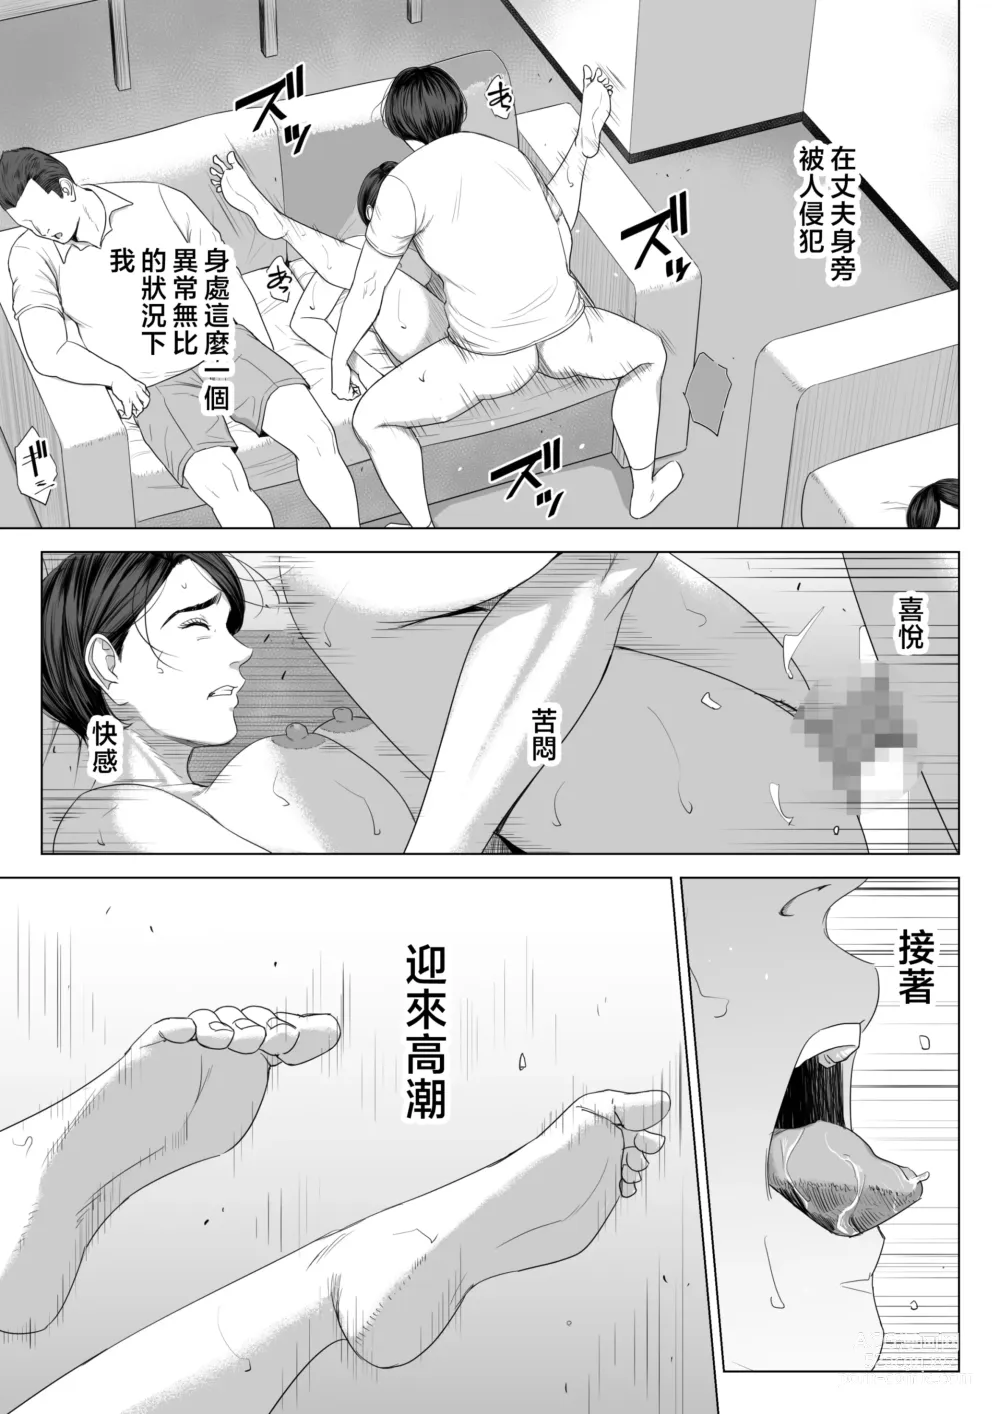 Page 72 of doujinshi Gibo no Tsukaeru Karada.